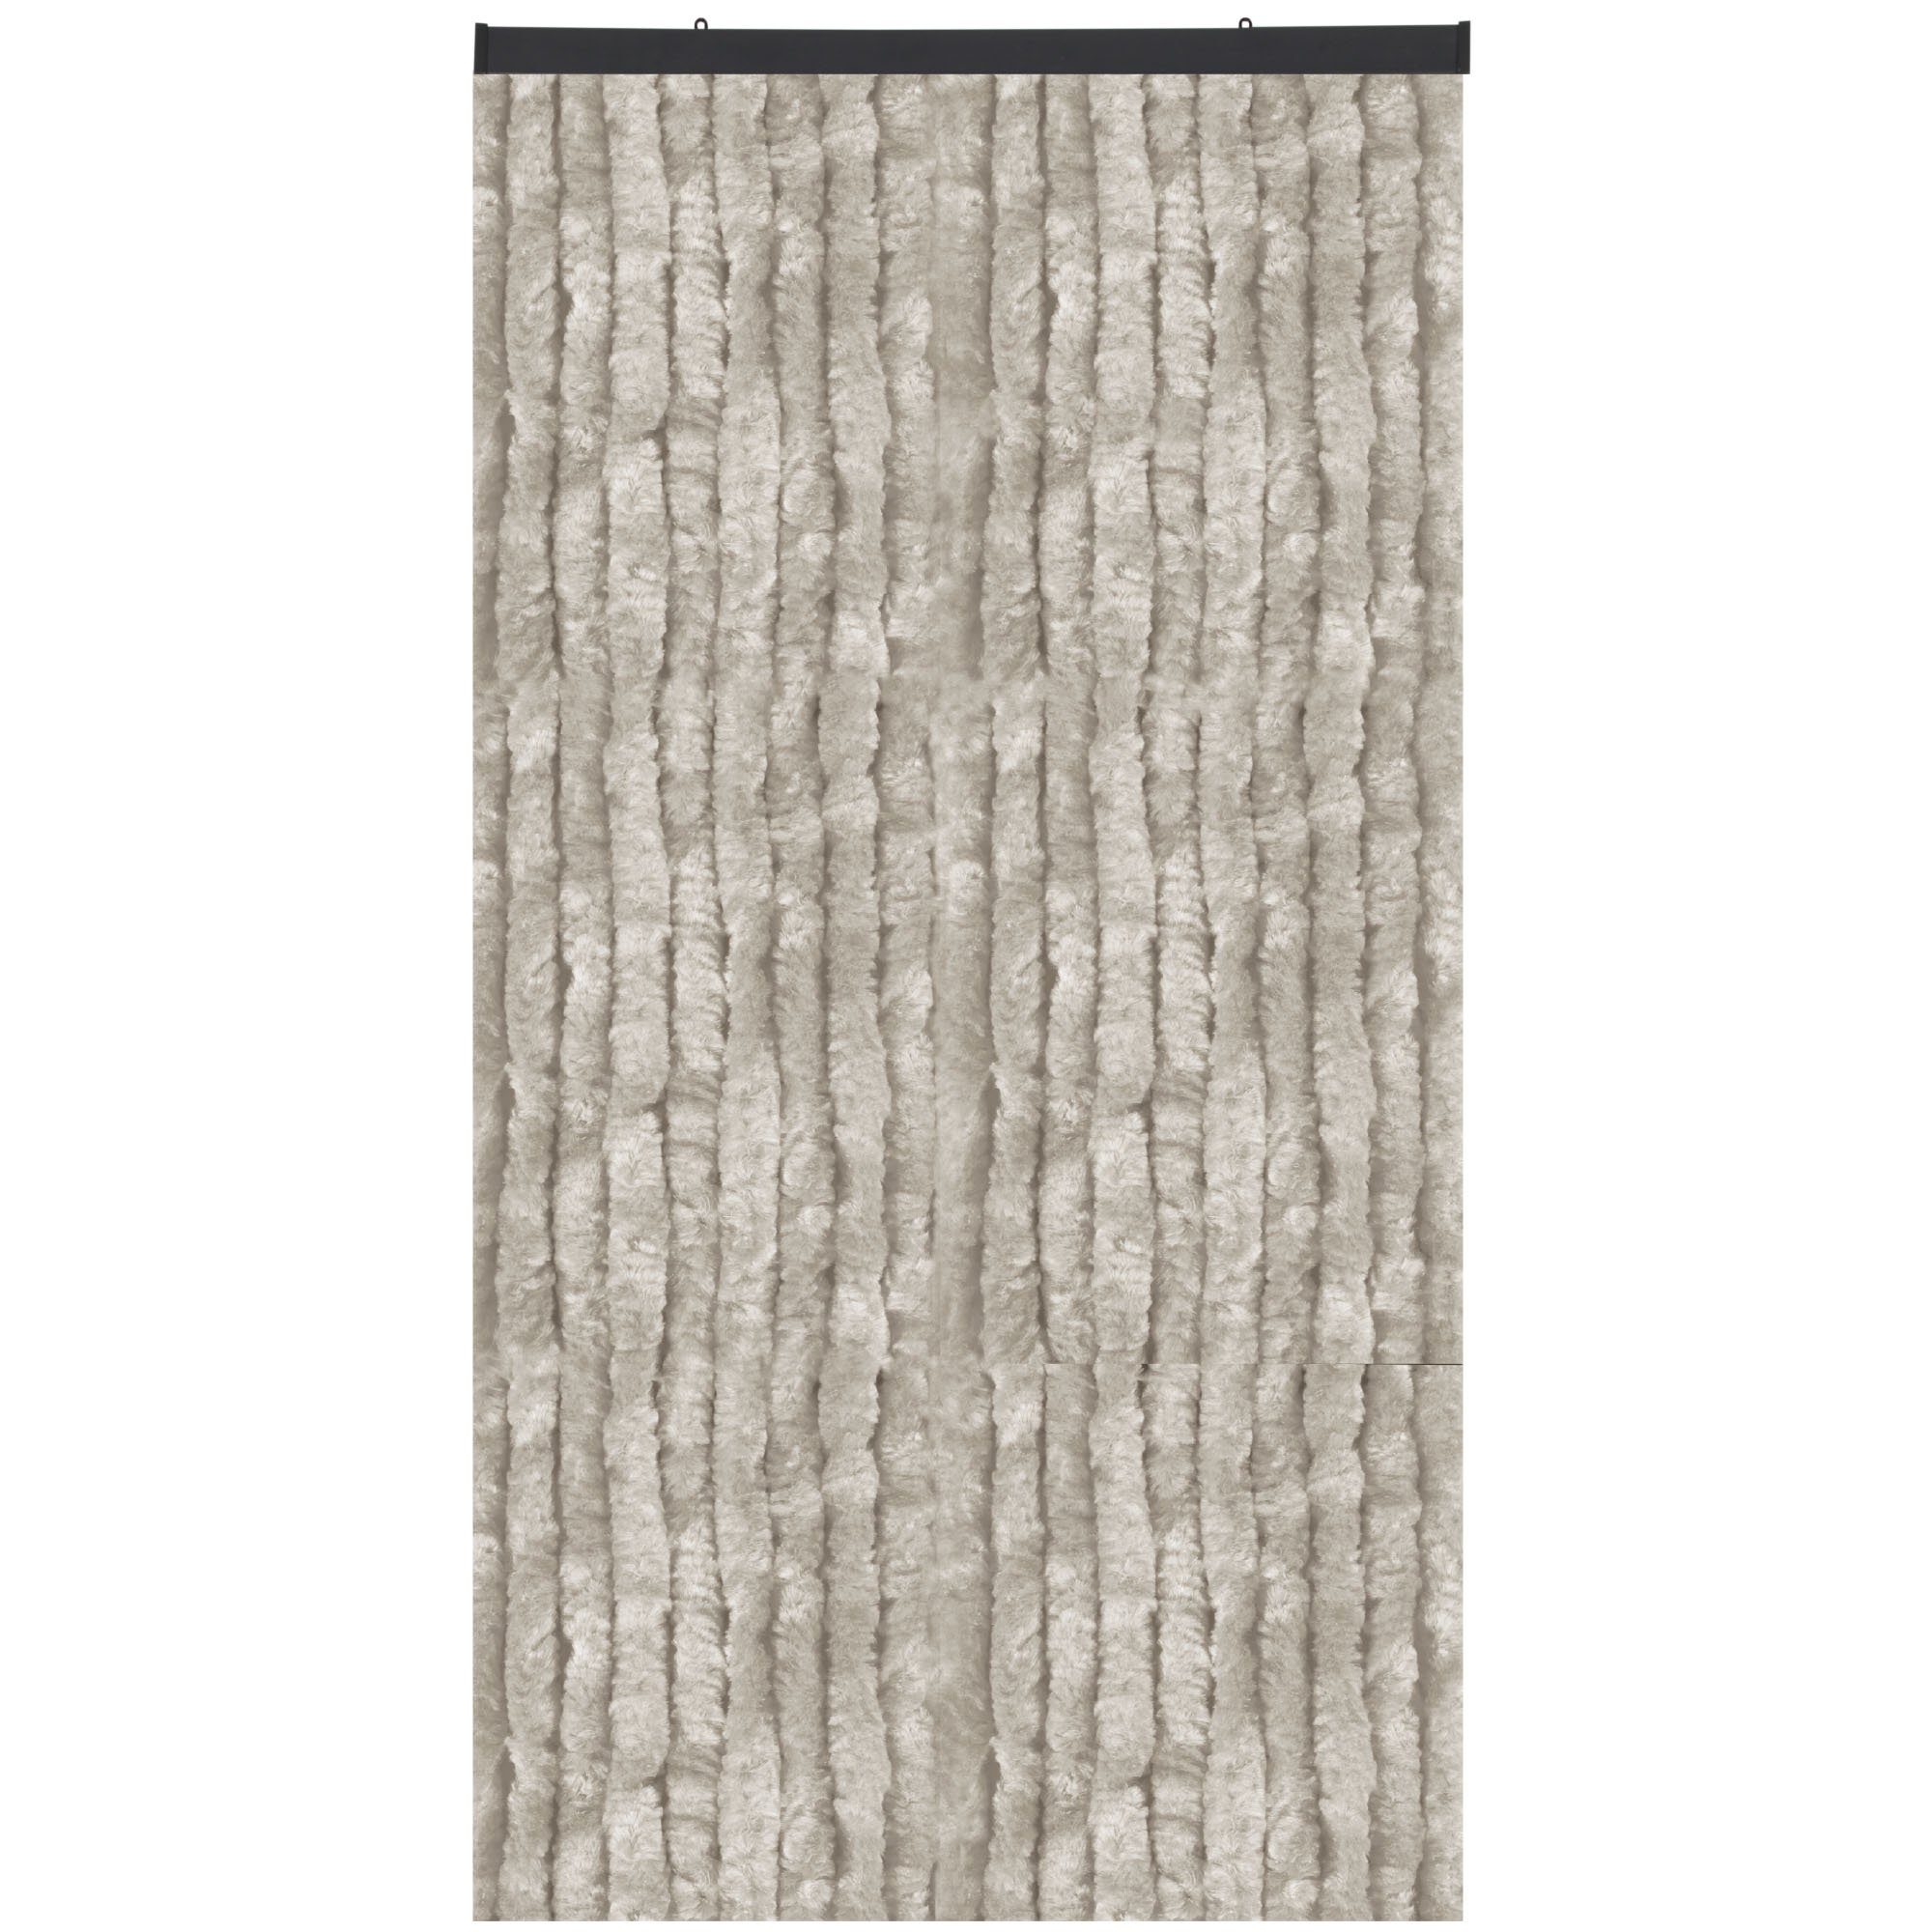 Türvorhang Flauschi, Arsvita, Öse (1 St), Flauschvorhang 160x200 cm in Unistreifen grau, viele Farben